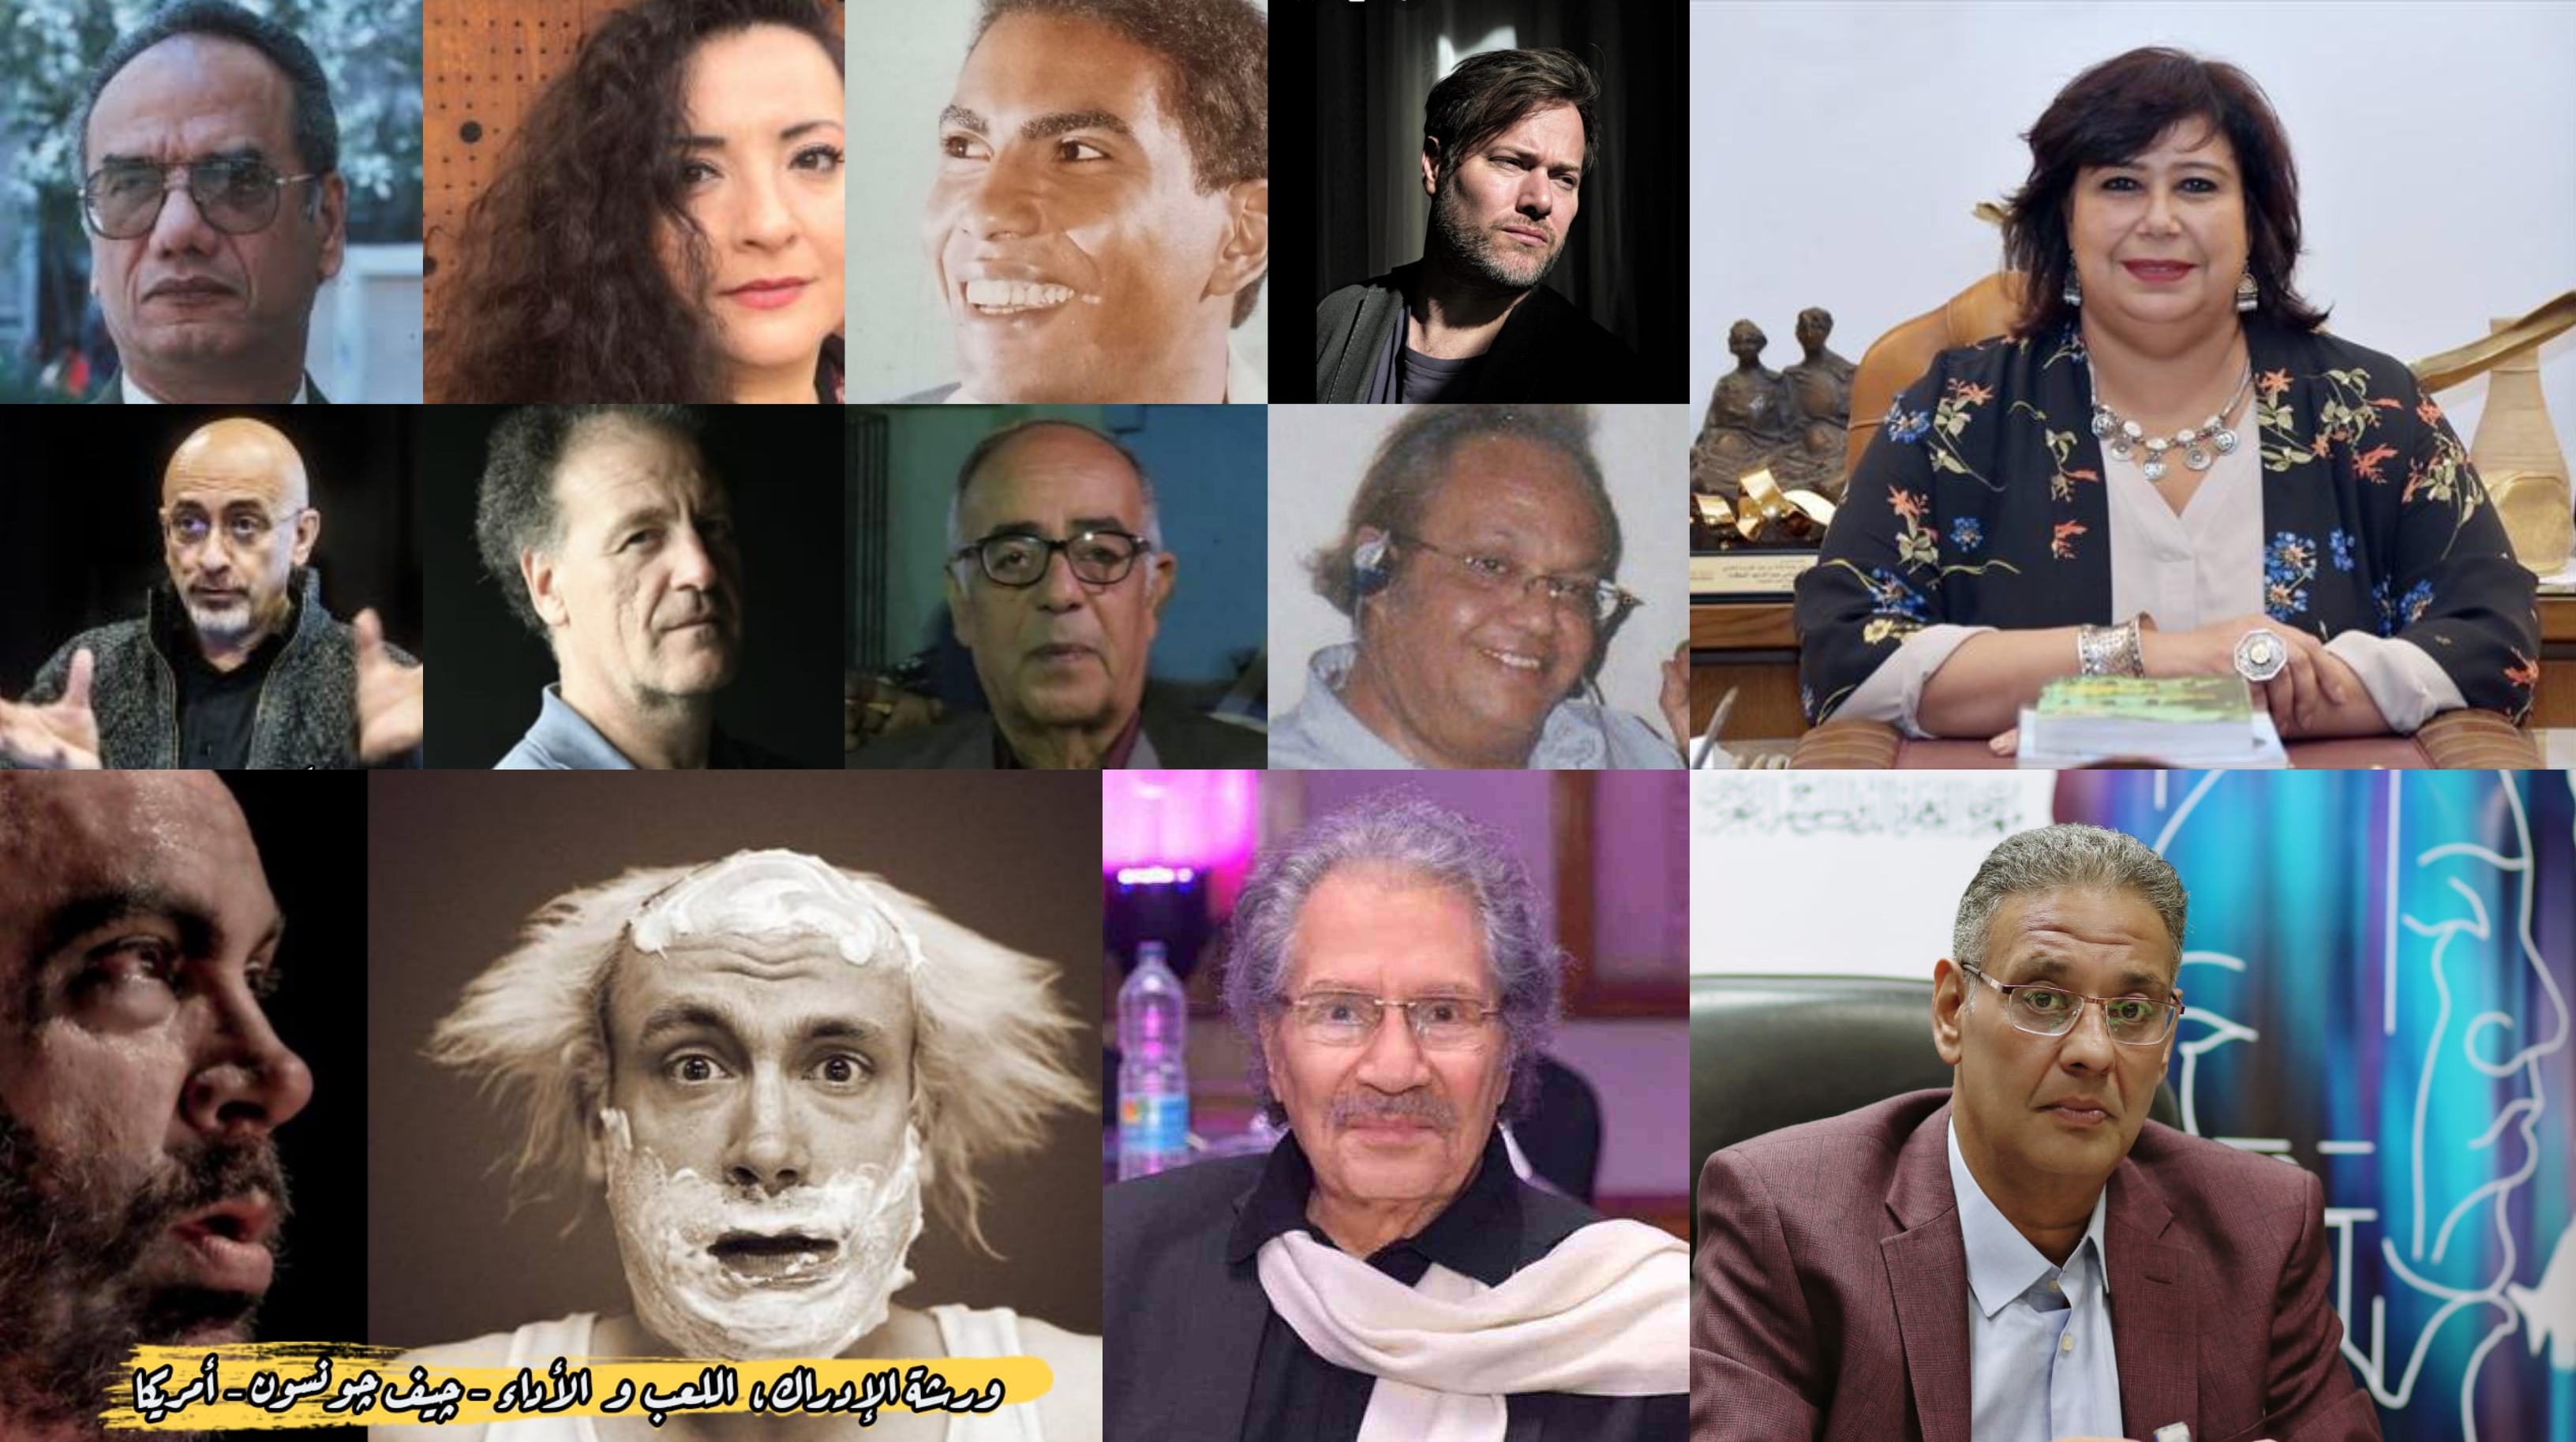 افتتاح مهرجان القاهرة الدولي للمسرح التجريبي يوم 1 سبتمبر